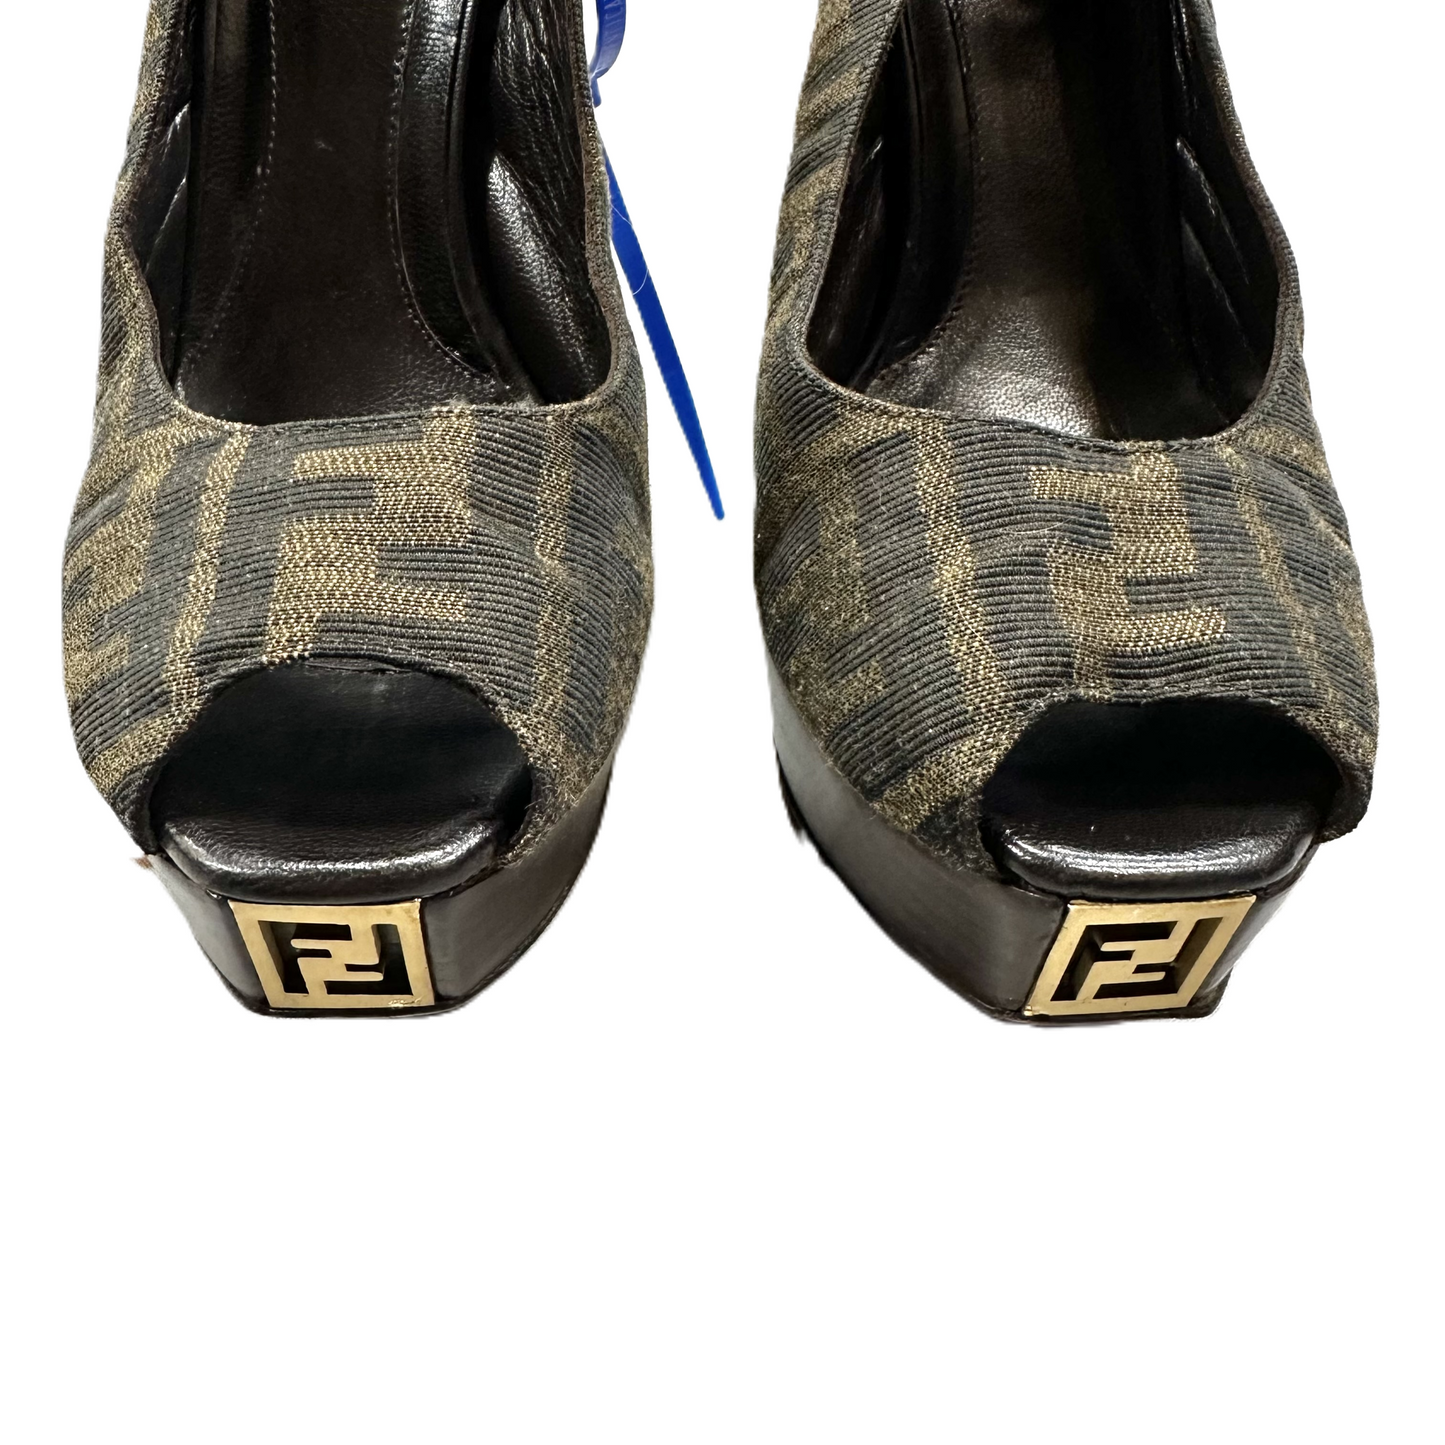 Black & Brown Sandals Heels Stiletto By Fendi, Size: 8